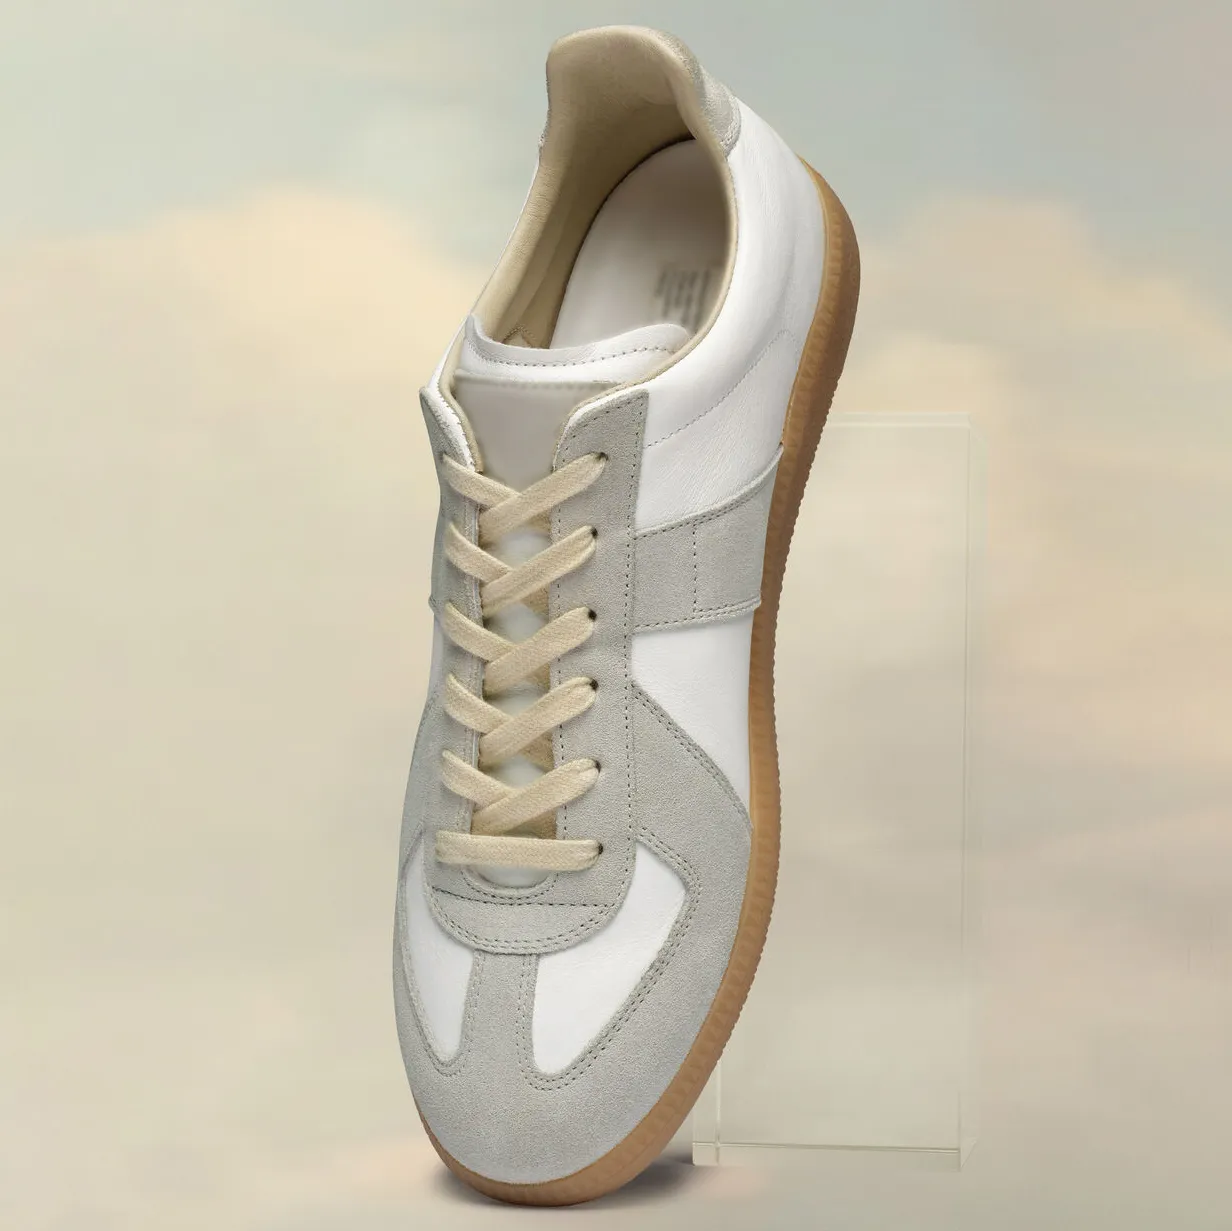 Homem Maisonns Margiela Running Shoes Summer Sneakers replicados moda ao ar livre Loafer Famous Designer Woman Trainer de Alta qualidade Luxo Feminino Treinadores